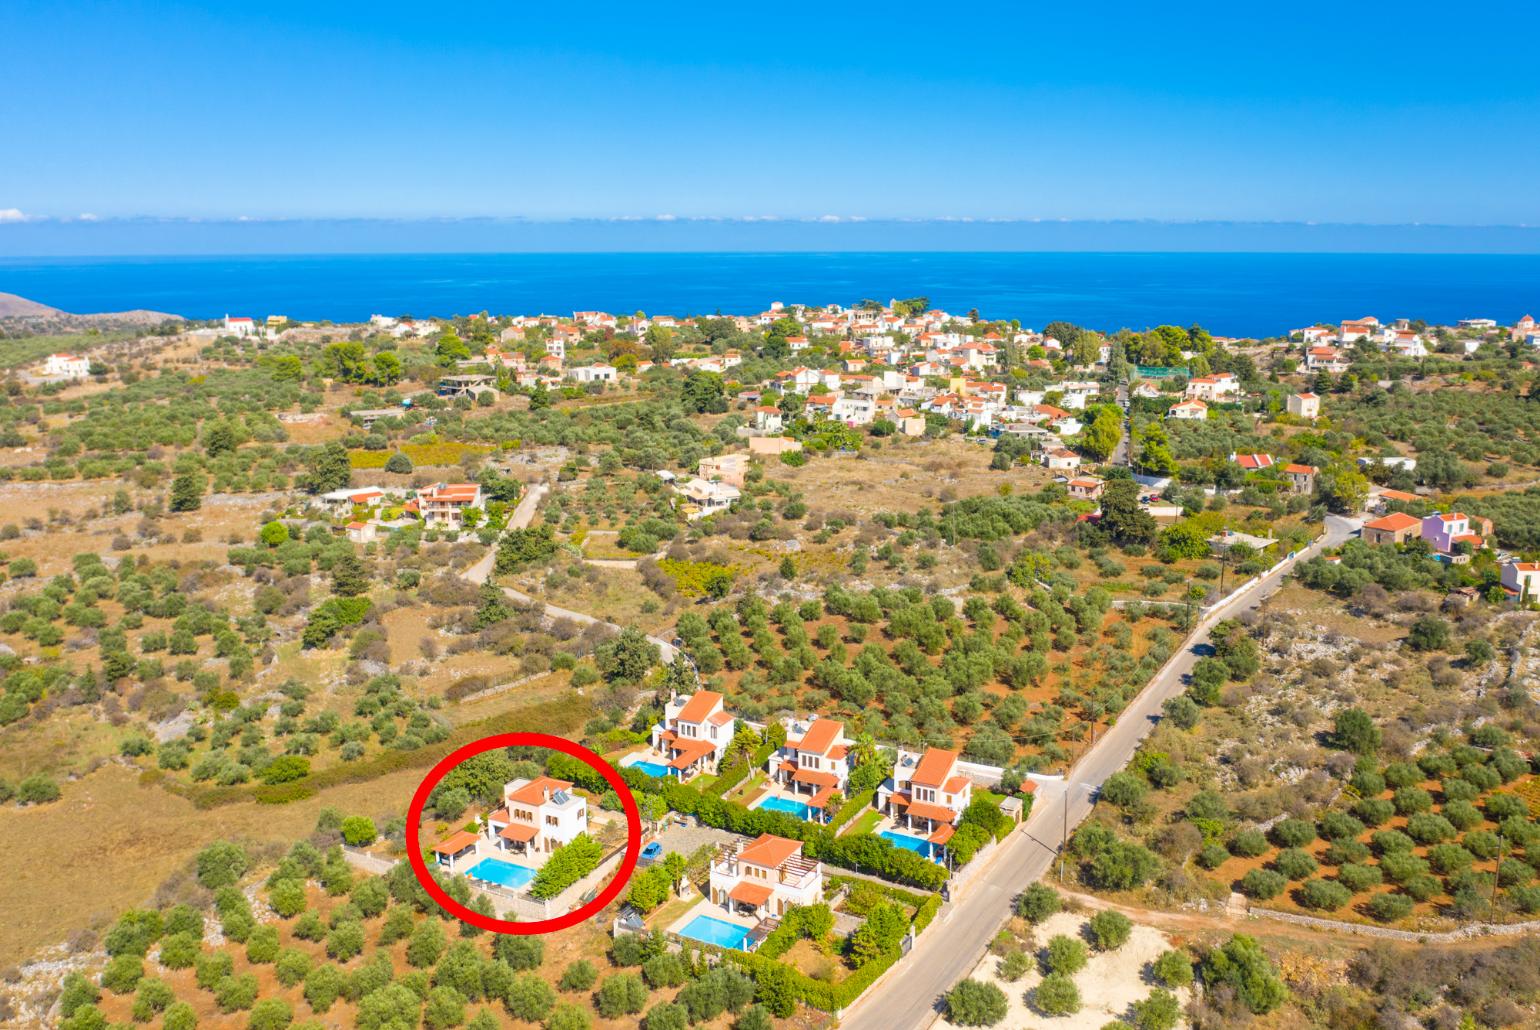 Aerial view showing location of Villa Eva